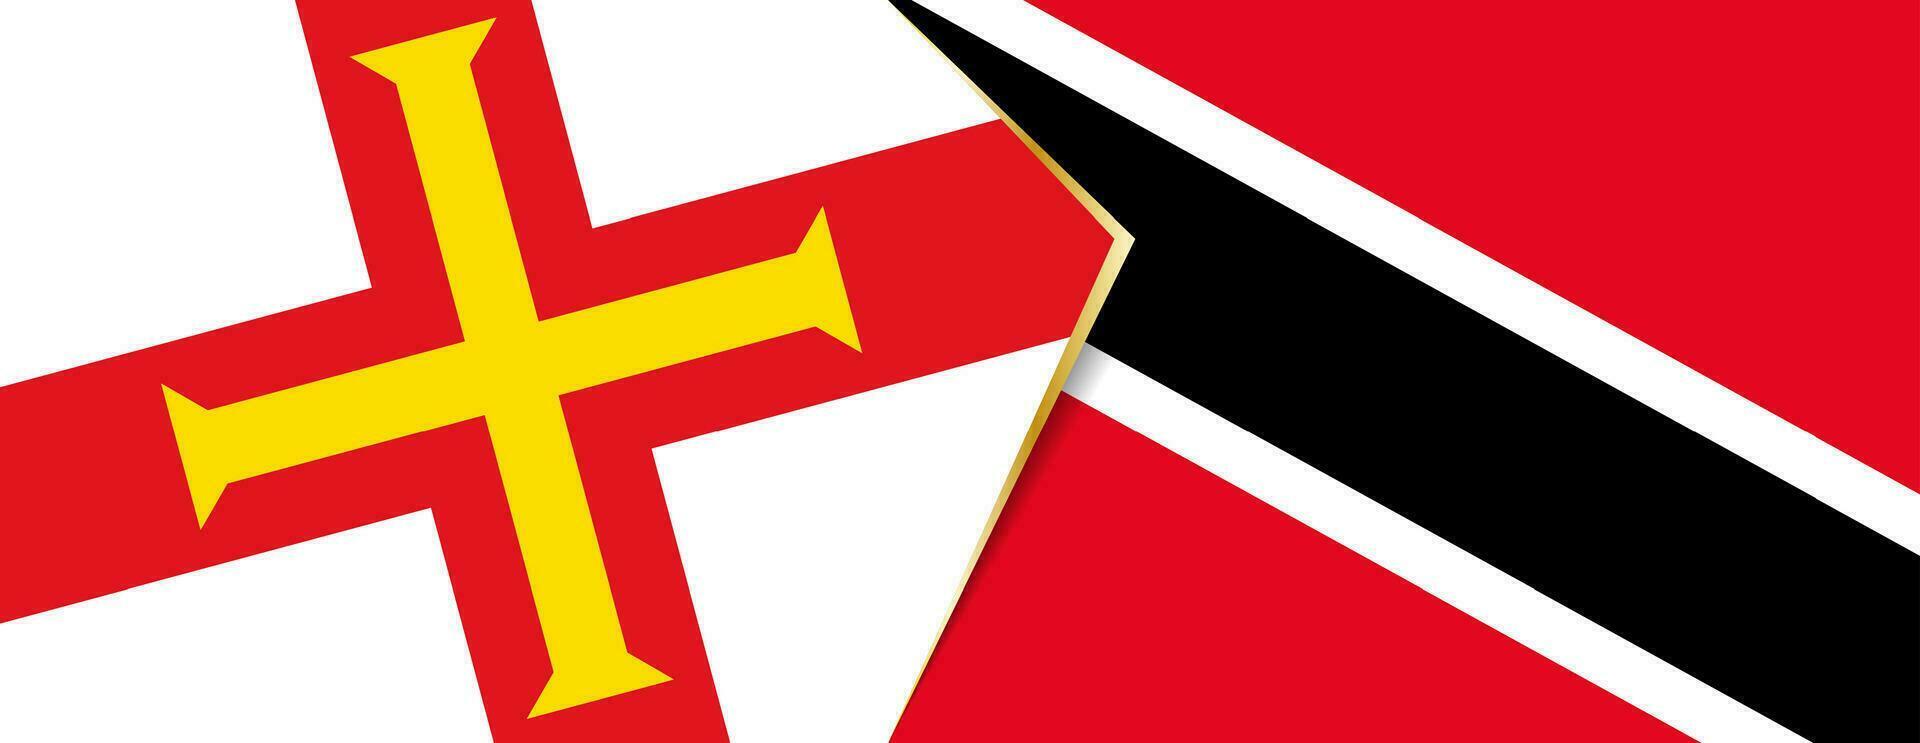 Guernsey e trinidad e tobago bandeiras, dois vetor bandeiras.